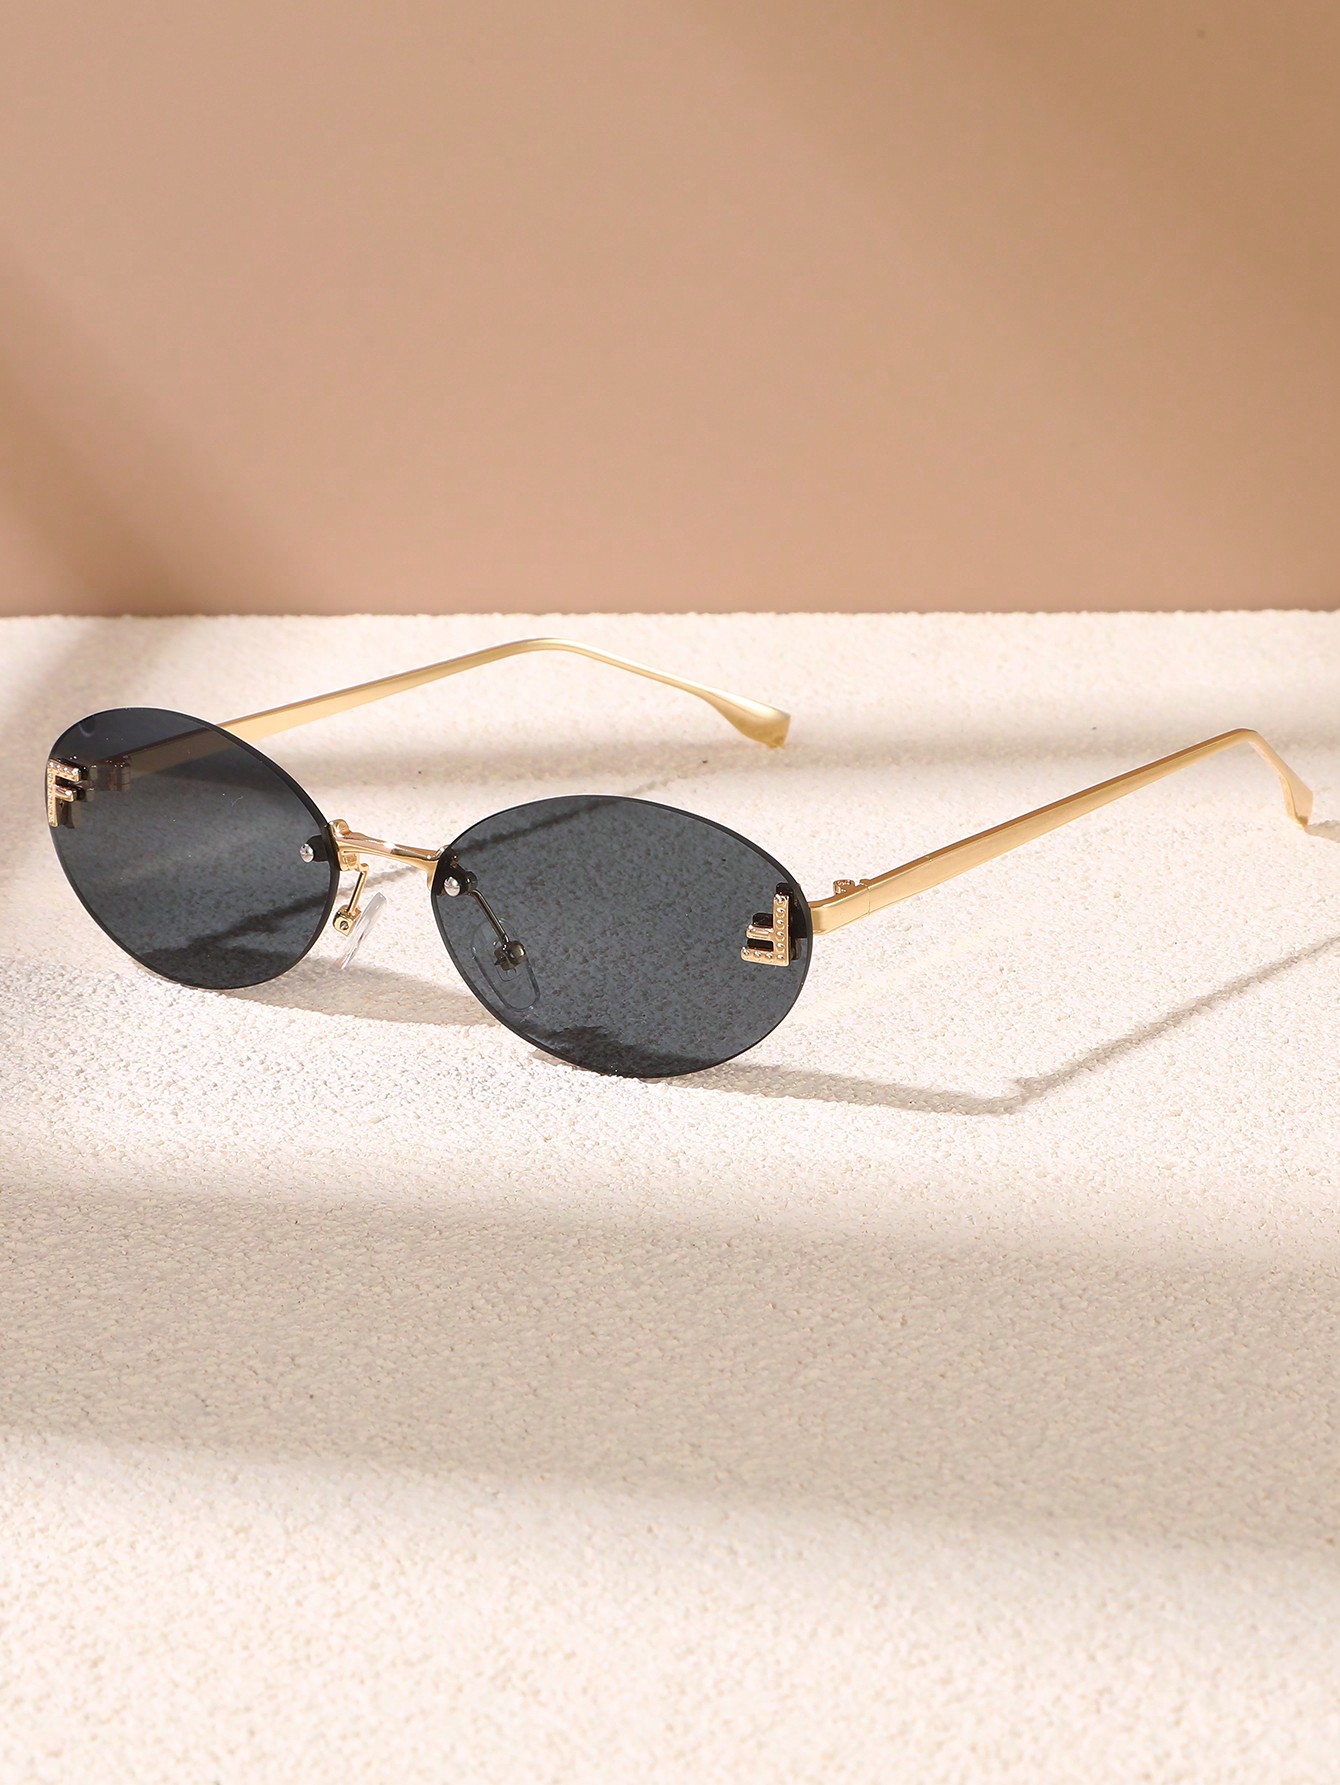 цена 1шт Жен. Безрамочные черные солнцезащитные очки с металлическим декором Модный стиль Для повседневного ношения